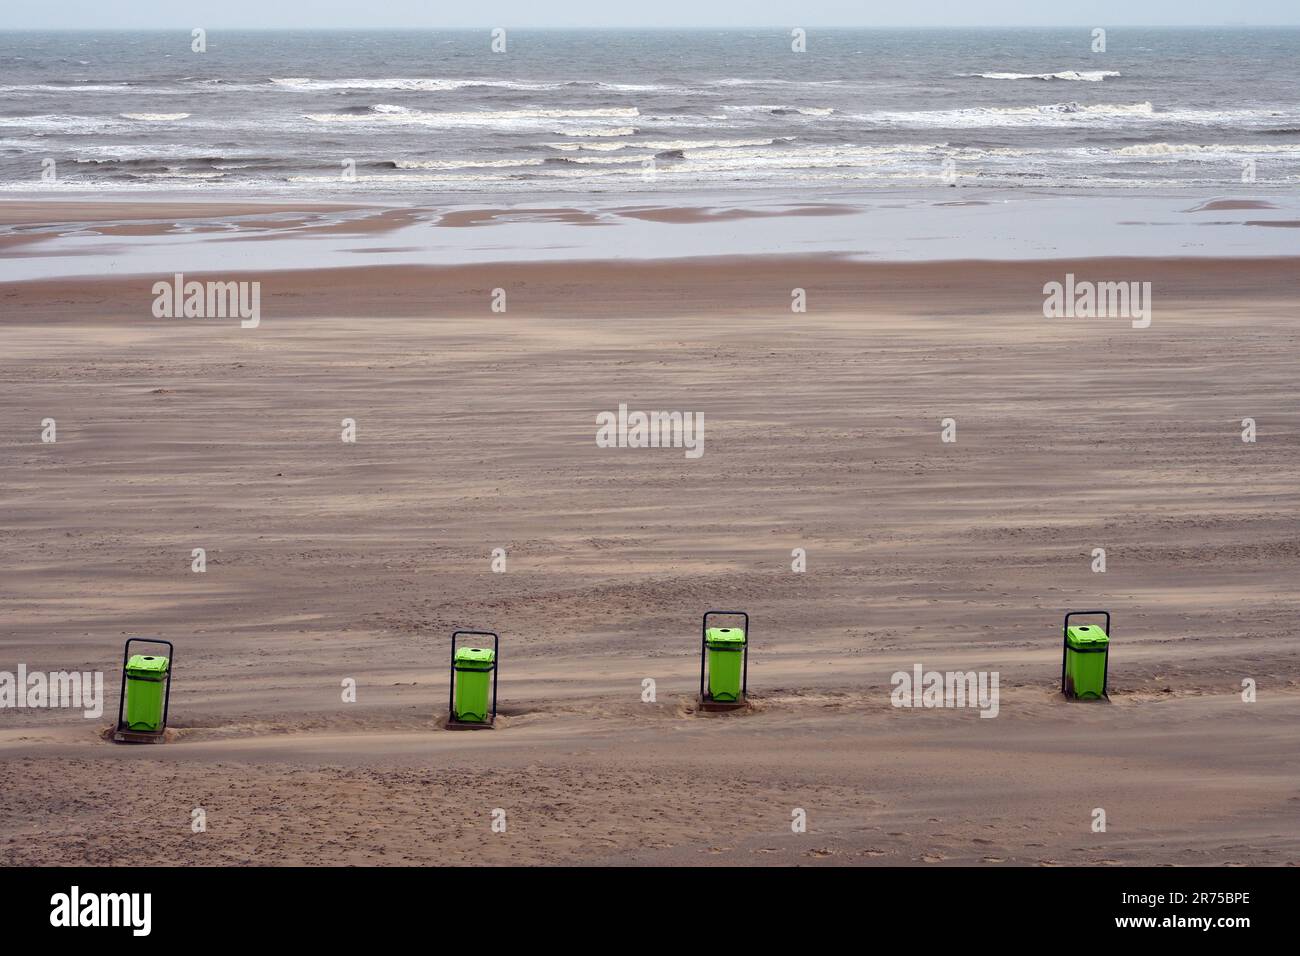 rubbish bins on the empty sandy beach, Netherlands, Bloemendaal aan Zee Stock Photo